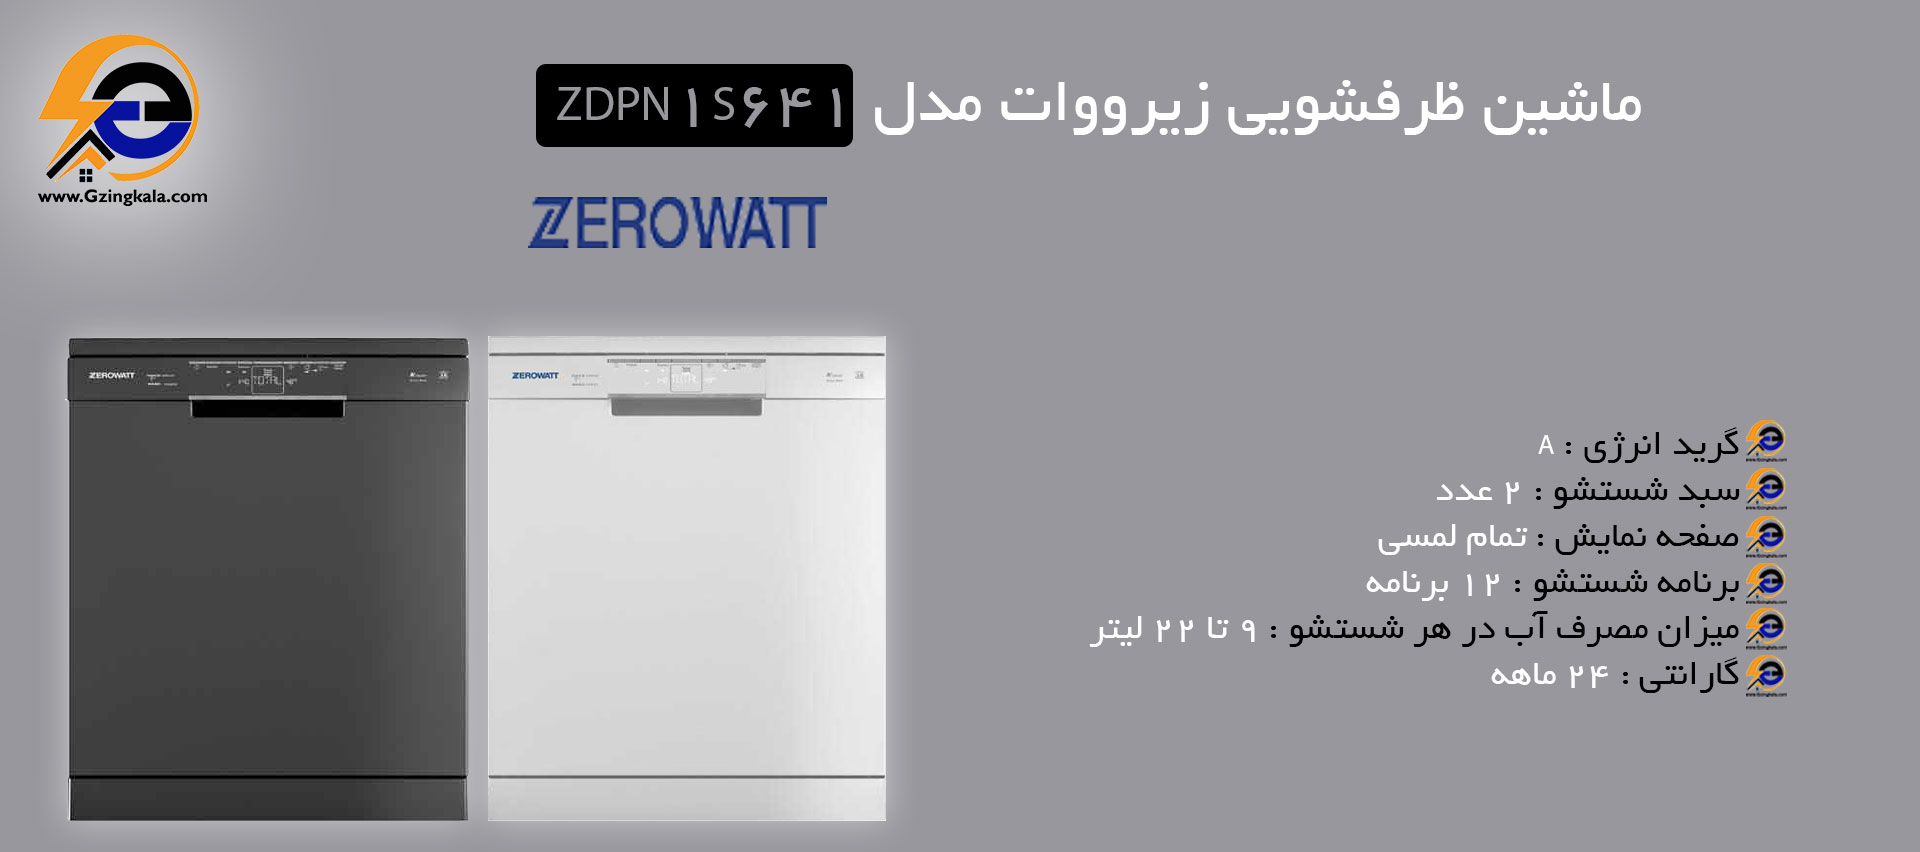 ماشین ظرفشویی زیرووات مدل ZDPN 1S641